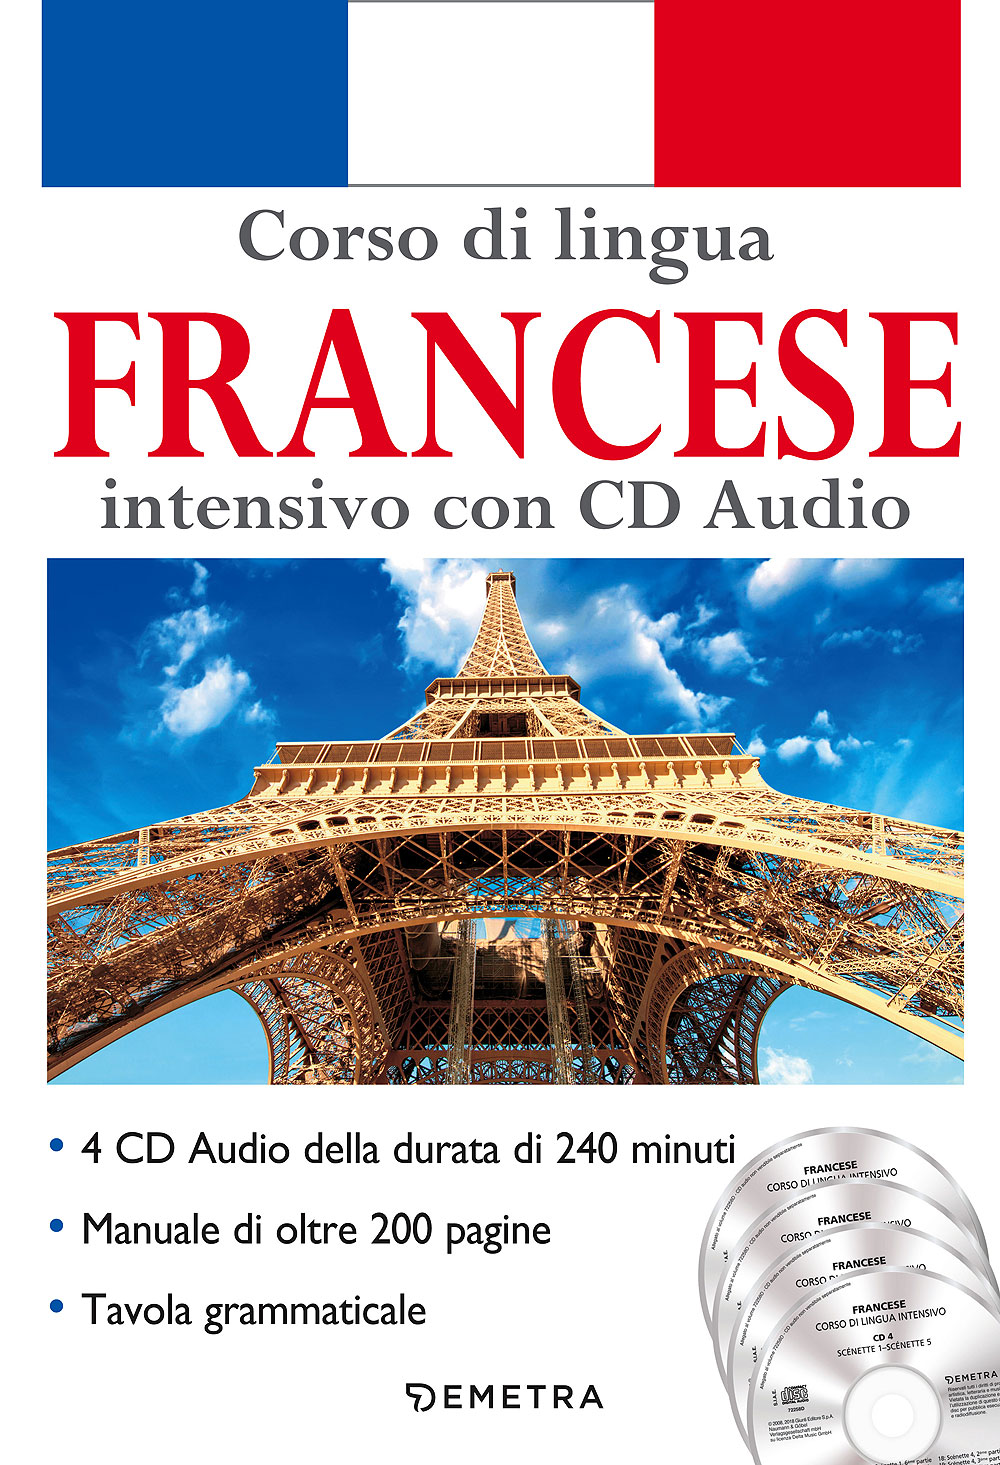 Corso di lingua Francese intensivo con CD Audio